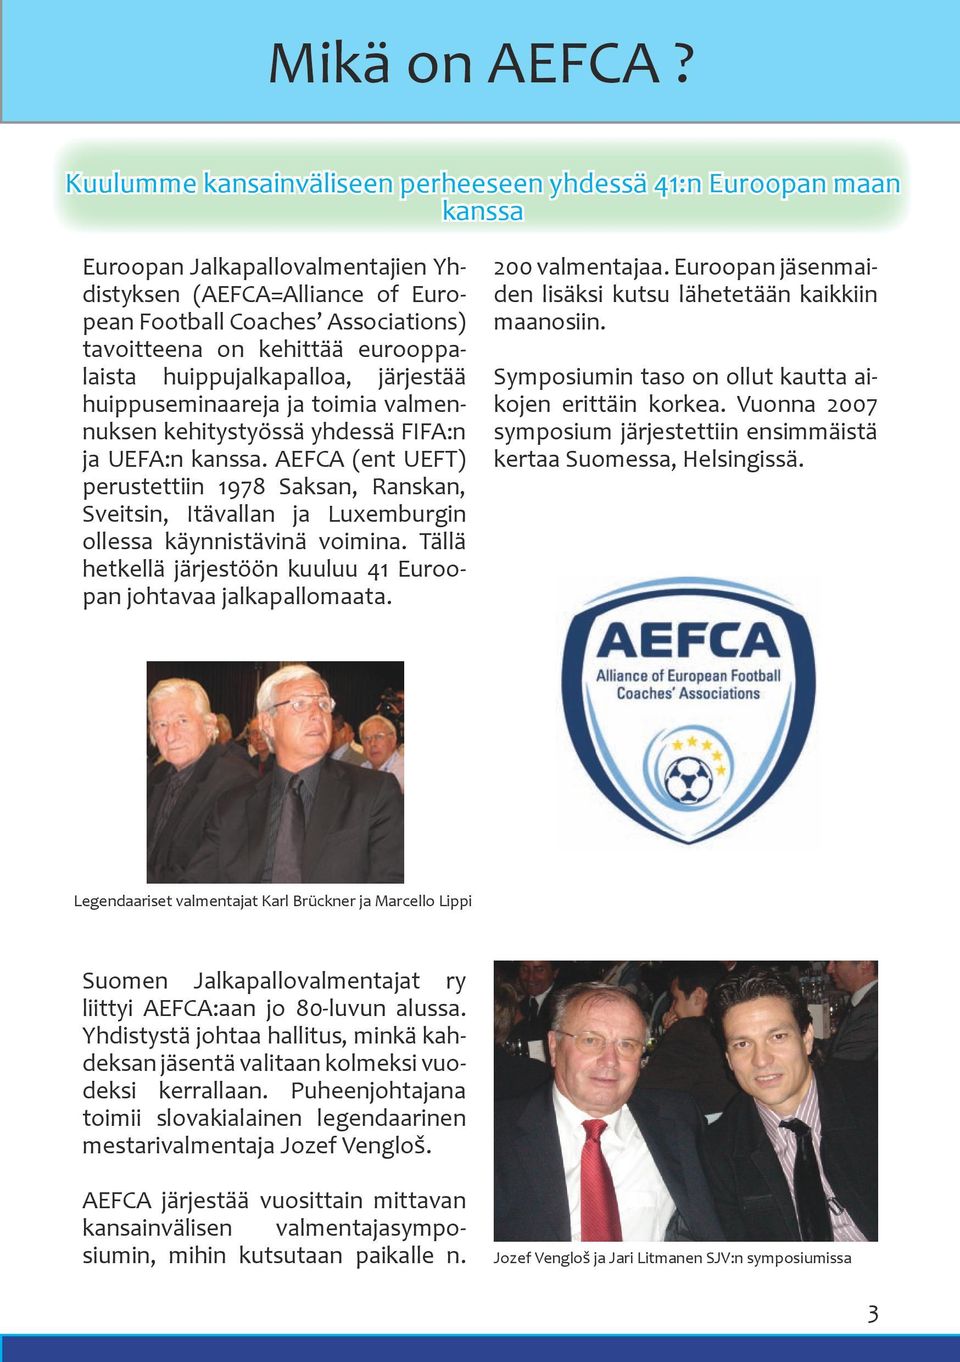 eurooppalaista huippujalkapalloa, järjestää huippuseminaareja ja toimia valmennuksen kehitystyössä yhdessä FIFA:n ja UEFA:n kanssa.